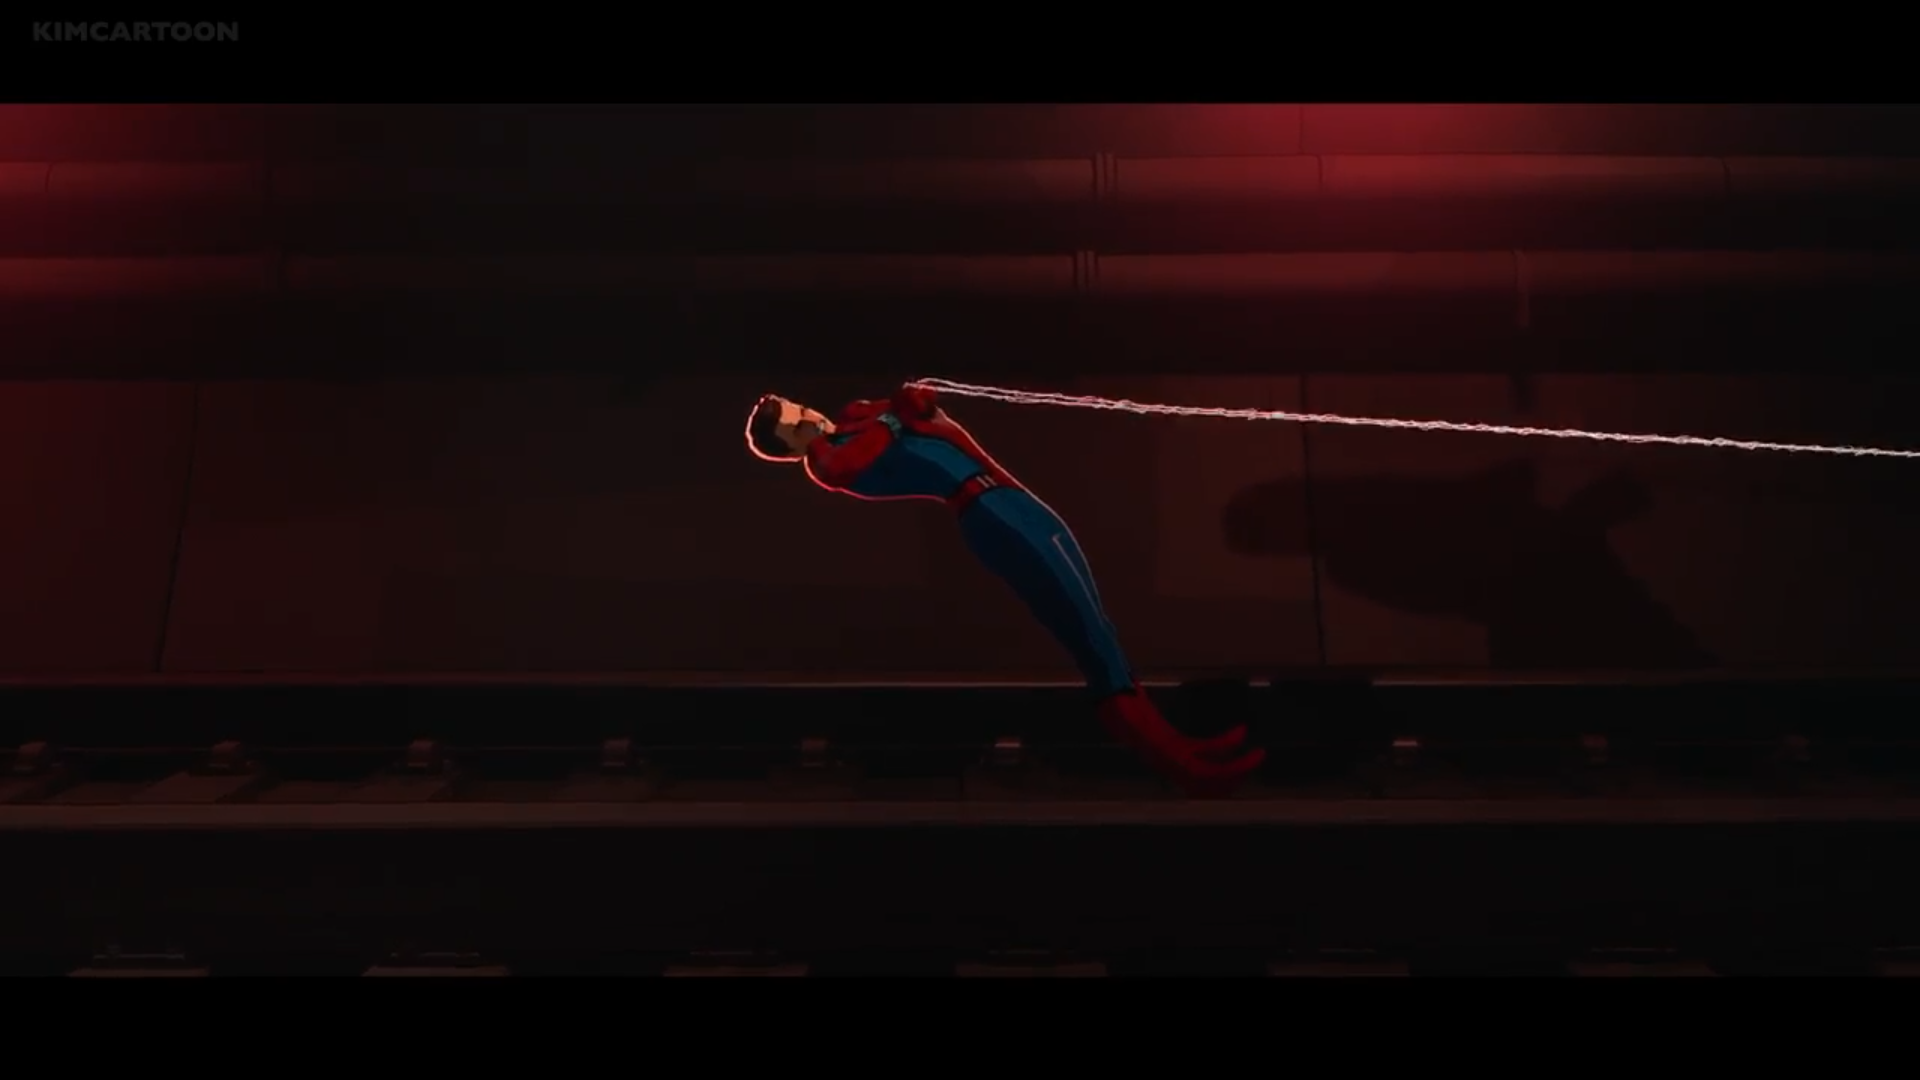 Spider-Man pulls a train by alvaxerox on DeviantArt